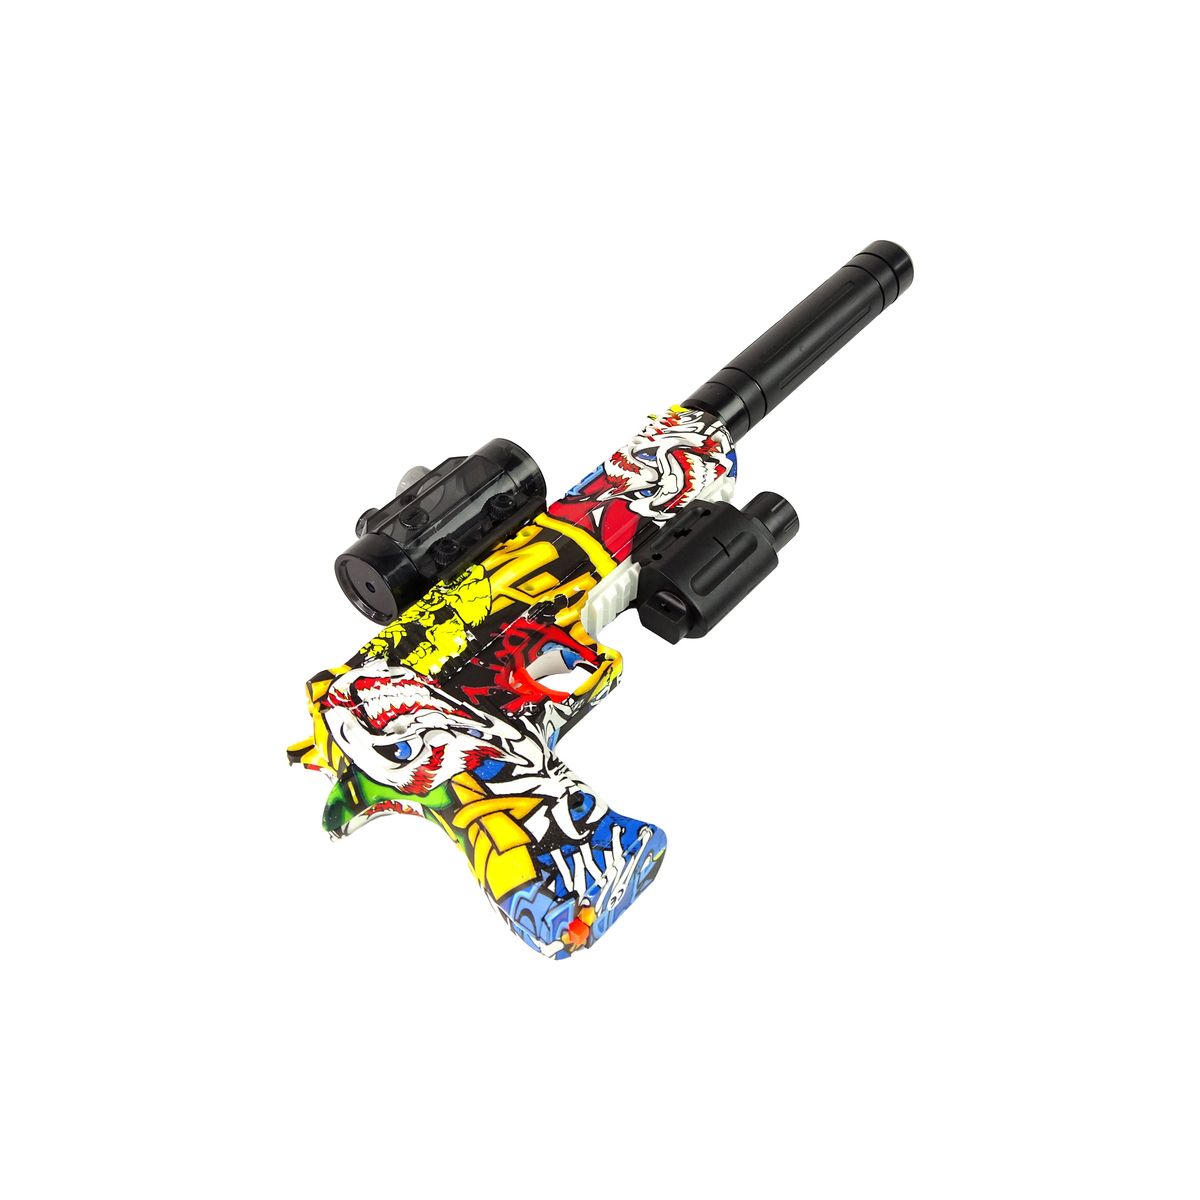 Pistolet Lean elektryczny laserowy na bomby wodne z ładowarką (14747)